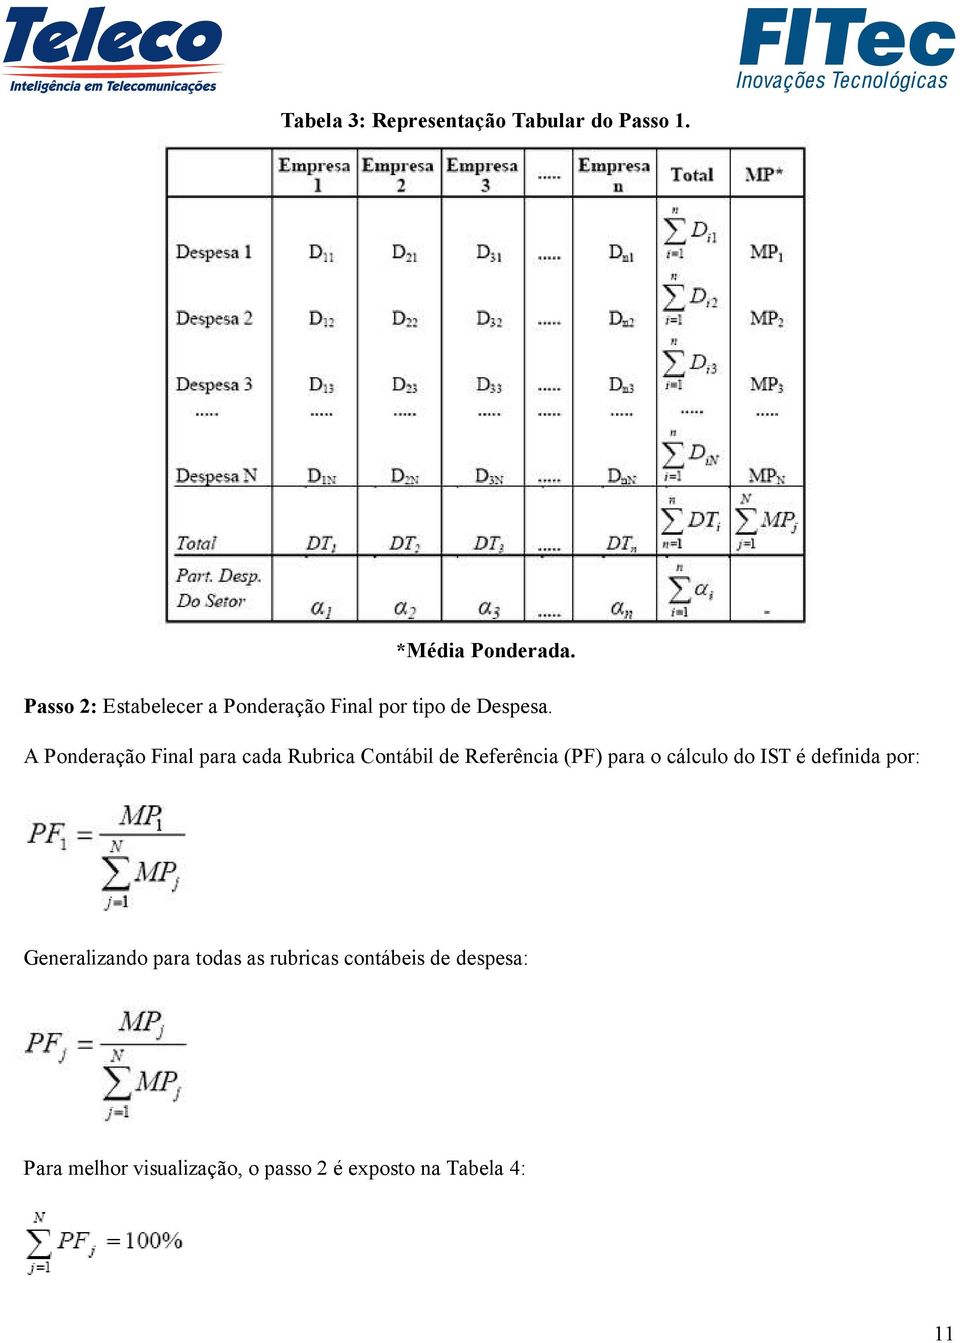 A Ponderação Final para cada Rubrica Contábil de Referência (PF) para o cálculo do IST